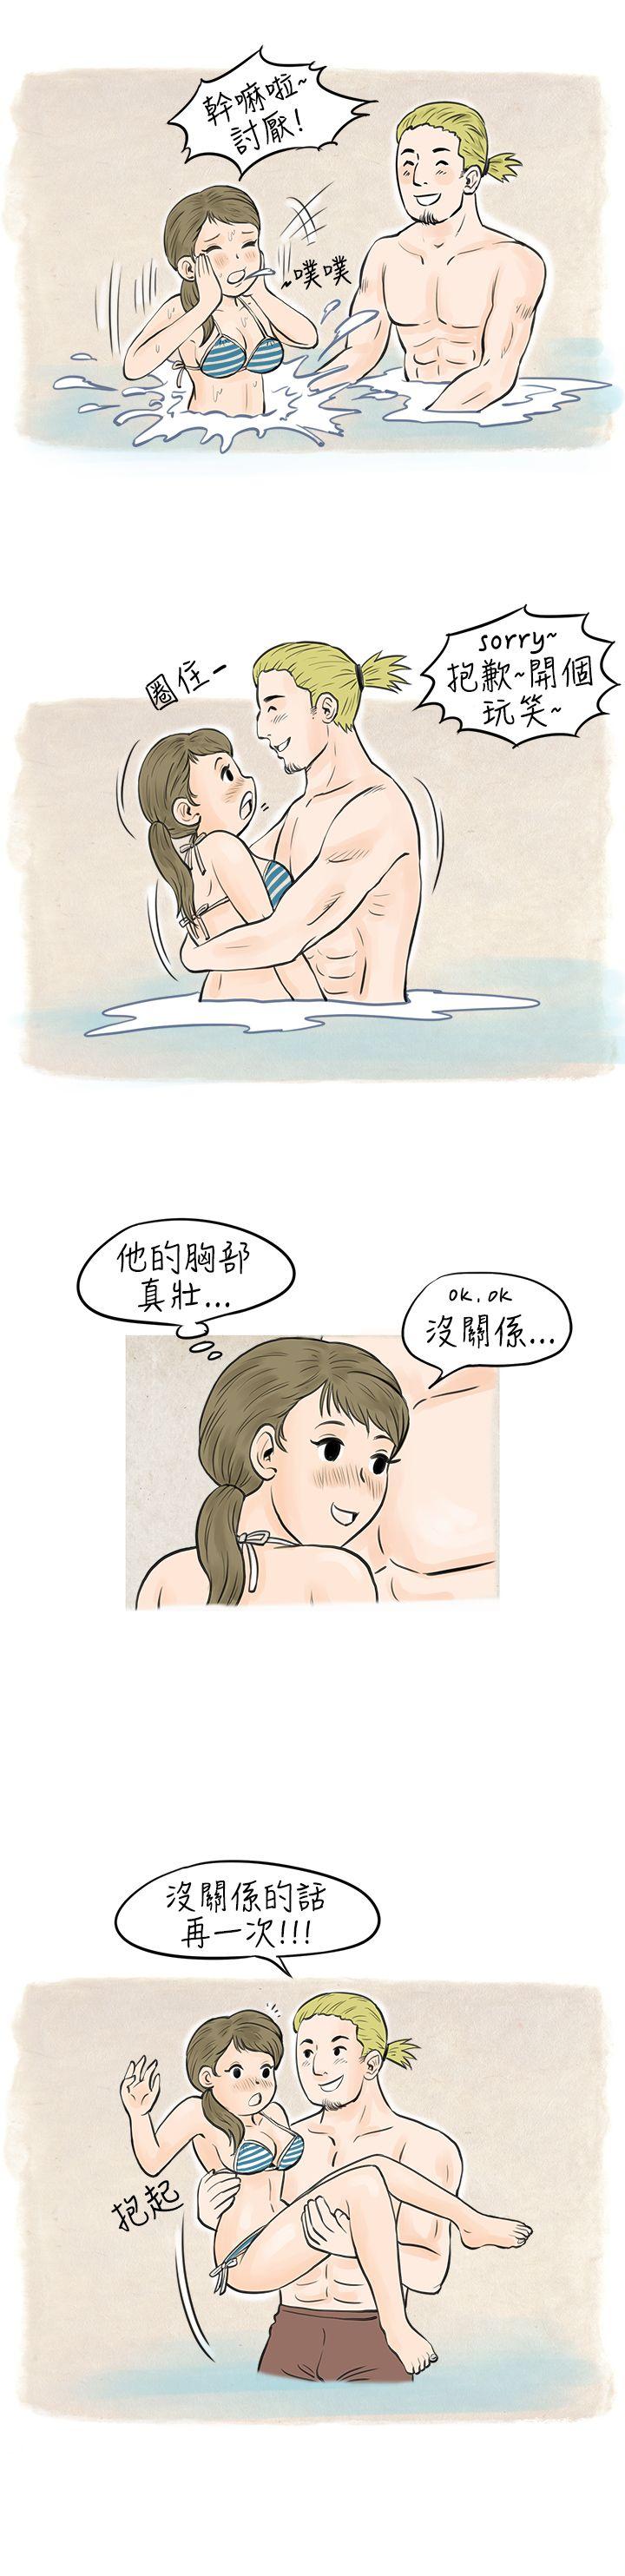 秘密Story  在梨泰院游泳池中的小故事(下) 漫画图片3.jpg